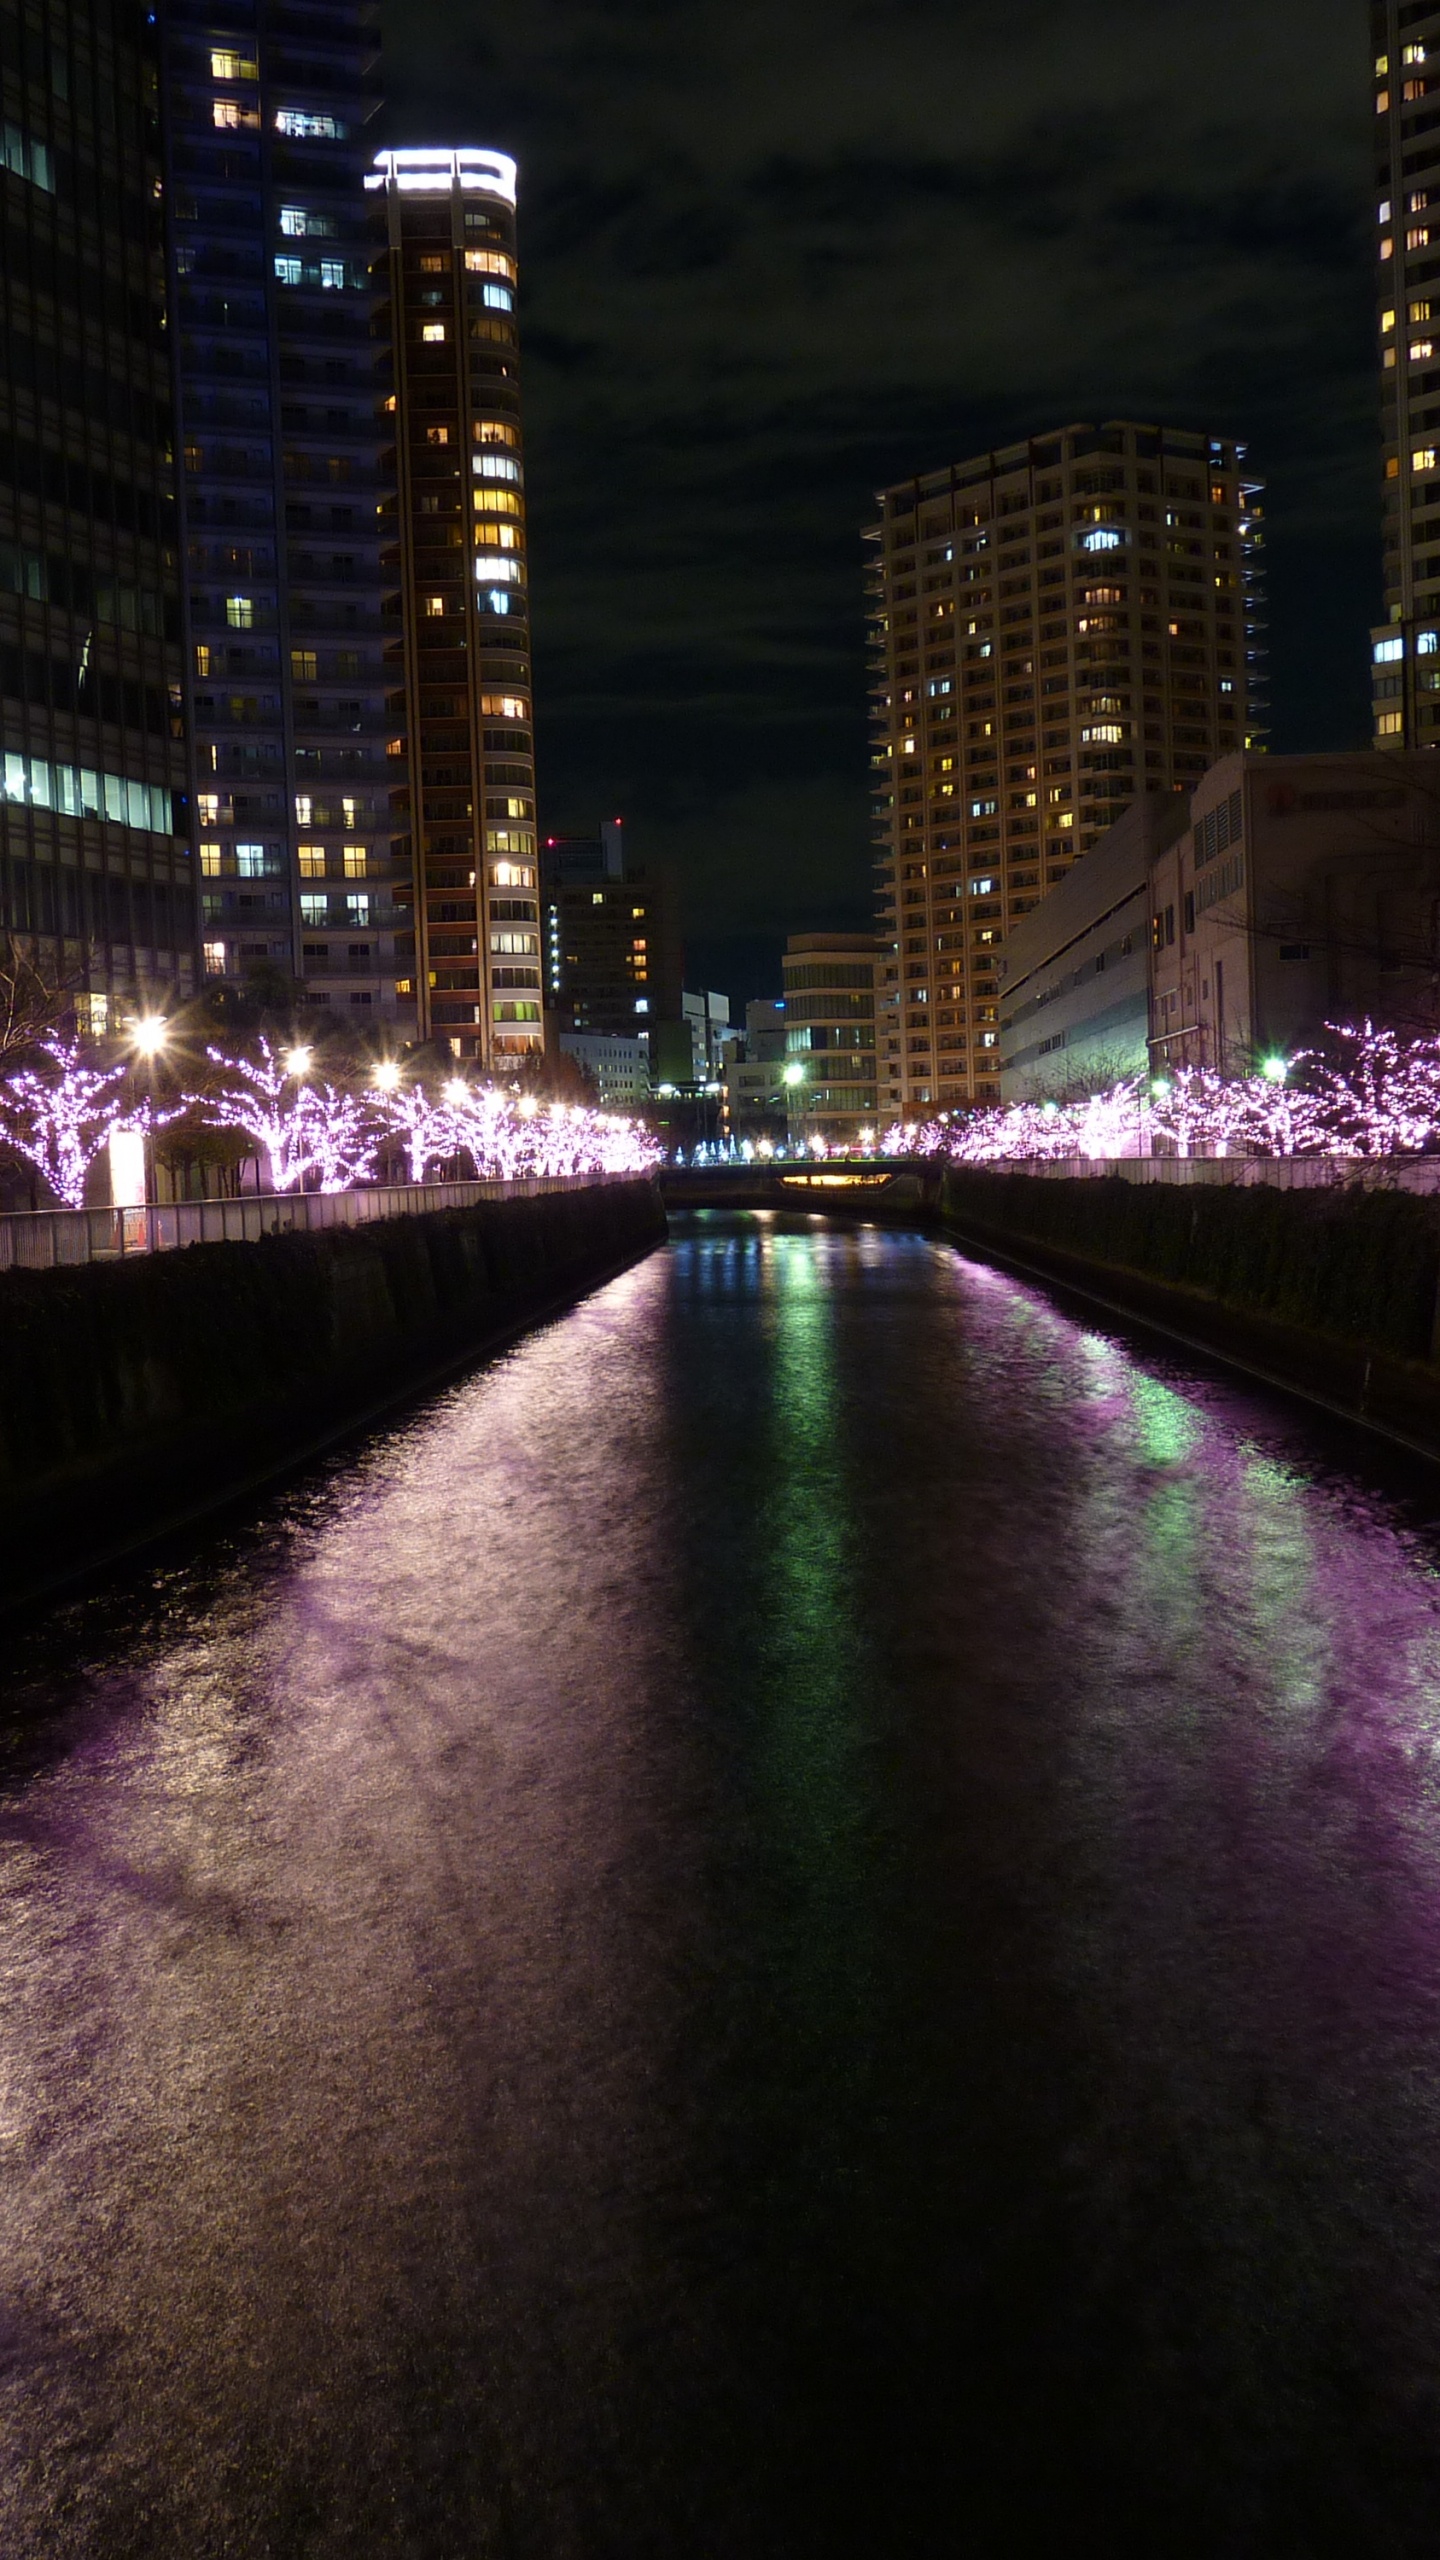 Lumières Violettes Sur le Pont Pendant la Nuit. Wallpaper in 1440x2560 Resolution